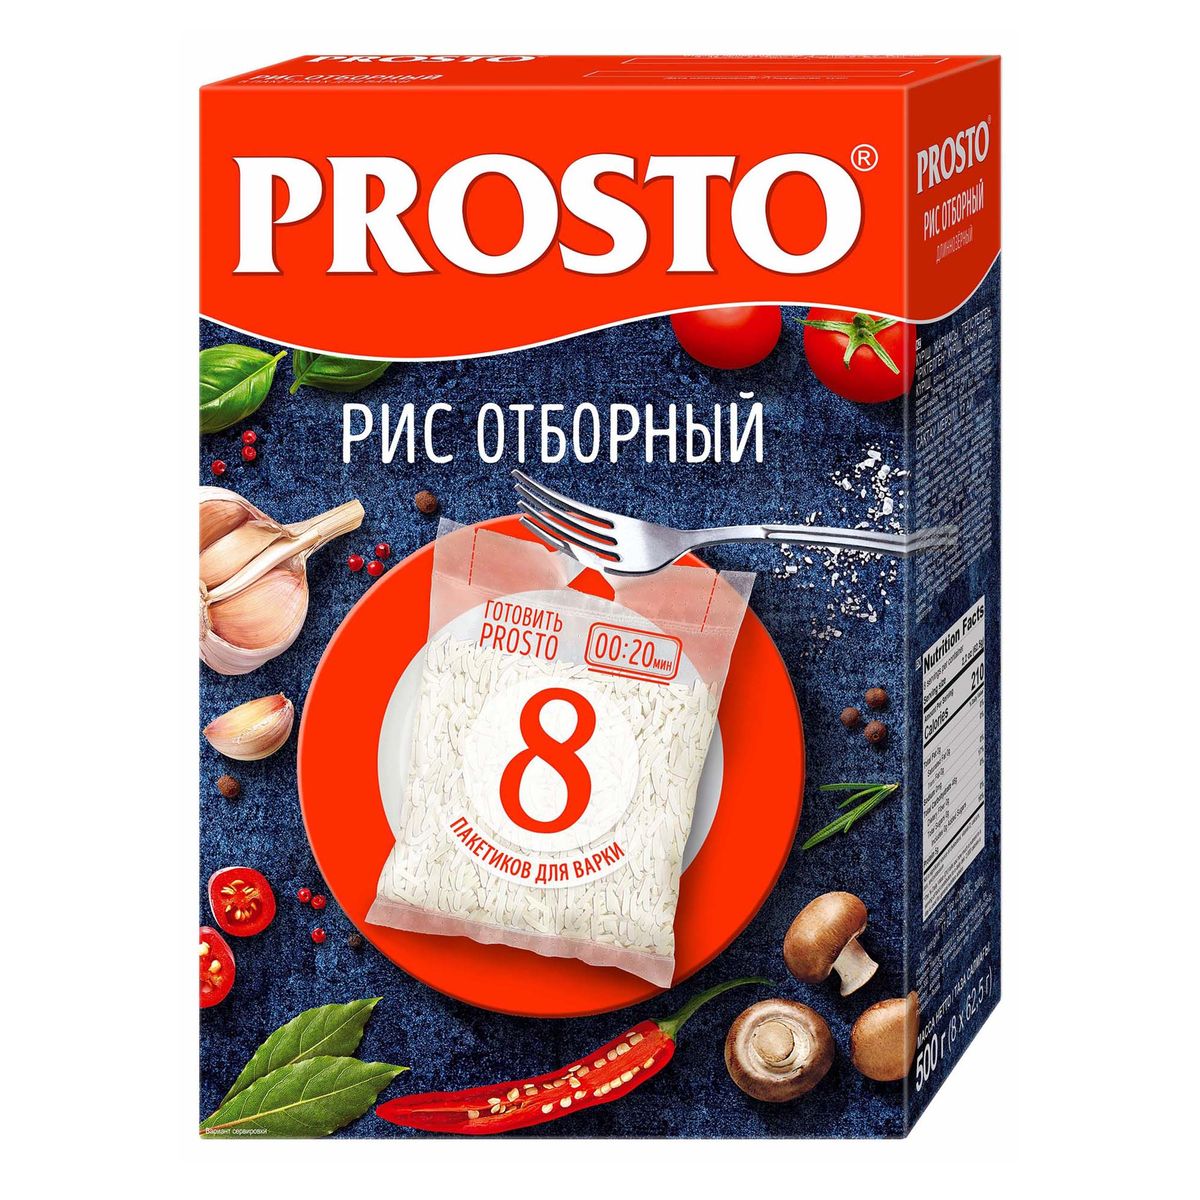 Рис PROSTO Отборный в варочных пакетиках, 8 порций, 500 г